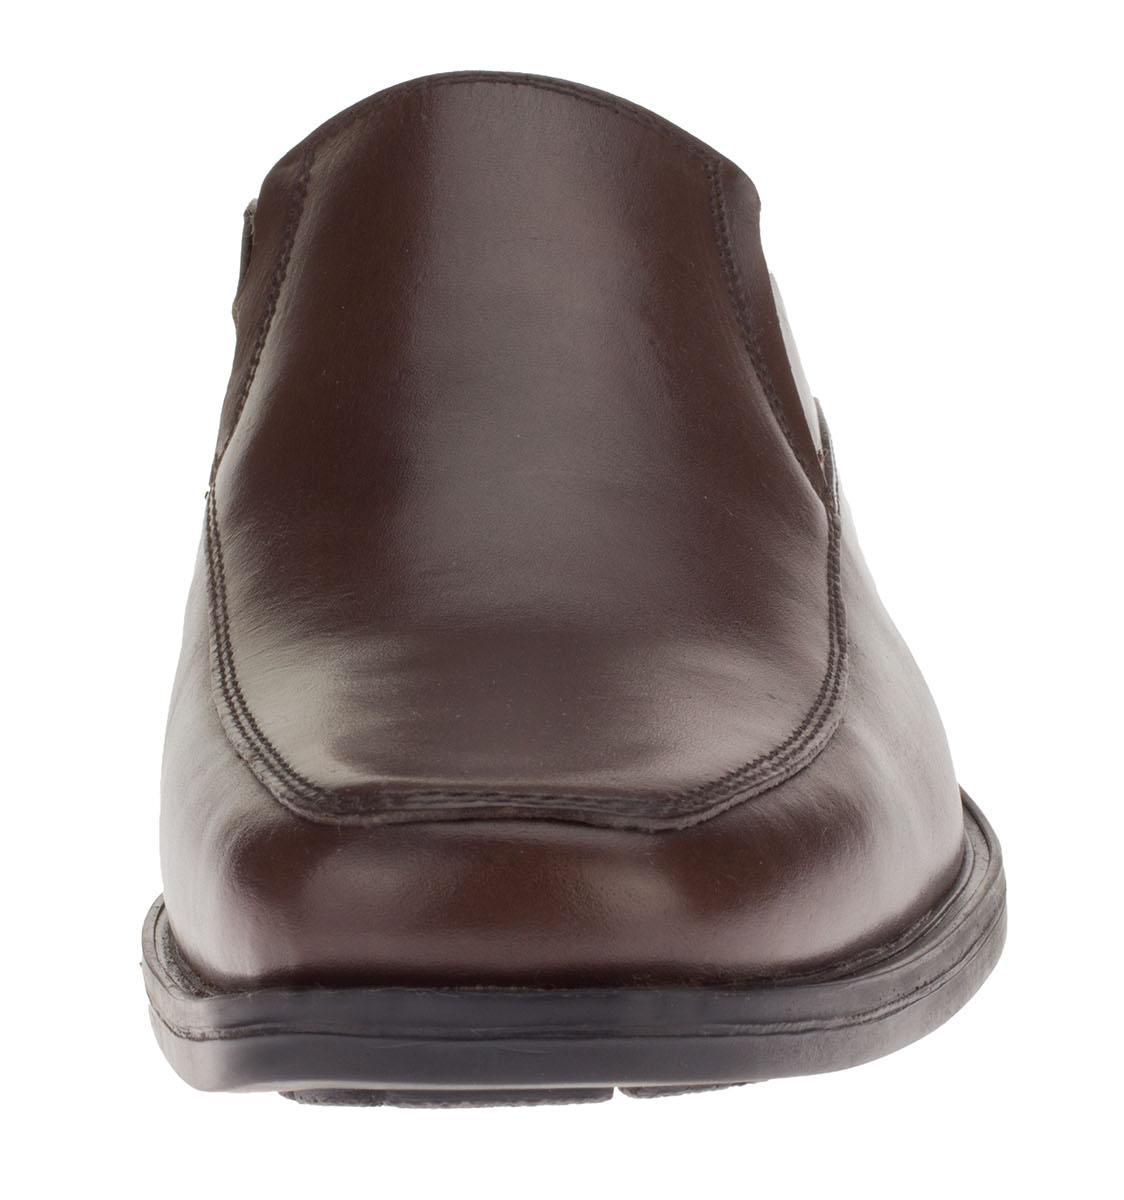 Mens Lenox Brown Leather Comfort Dress Shoe DTI DARYA - image 2 of 7